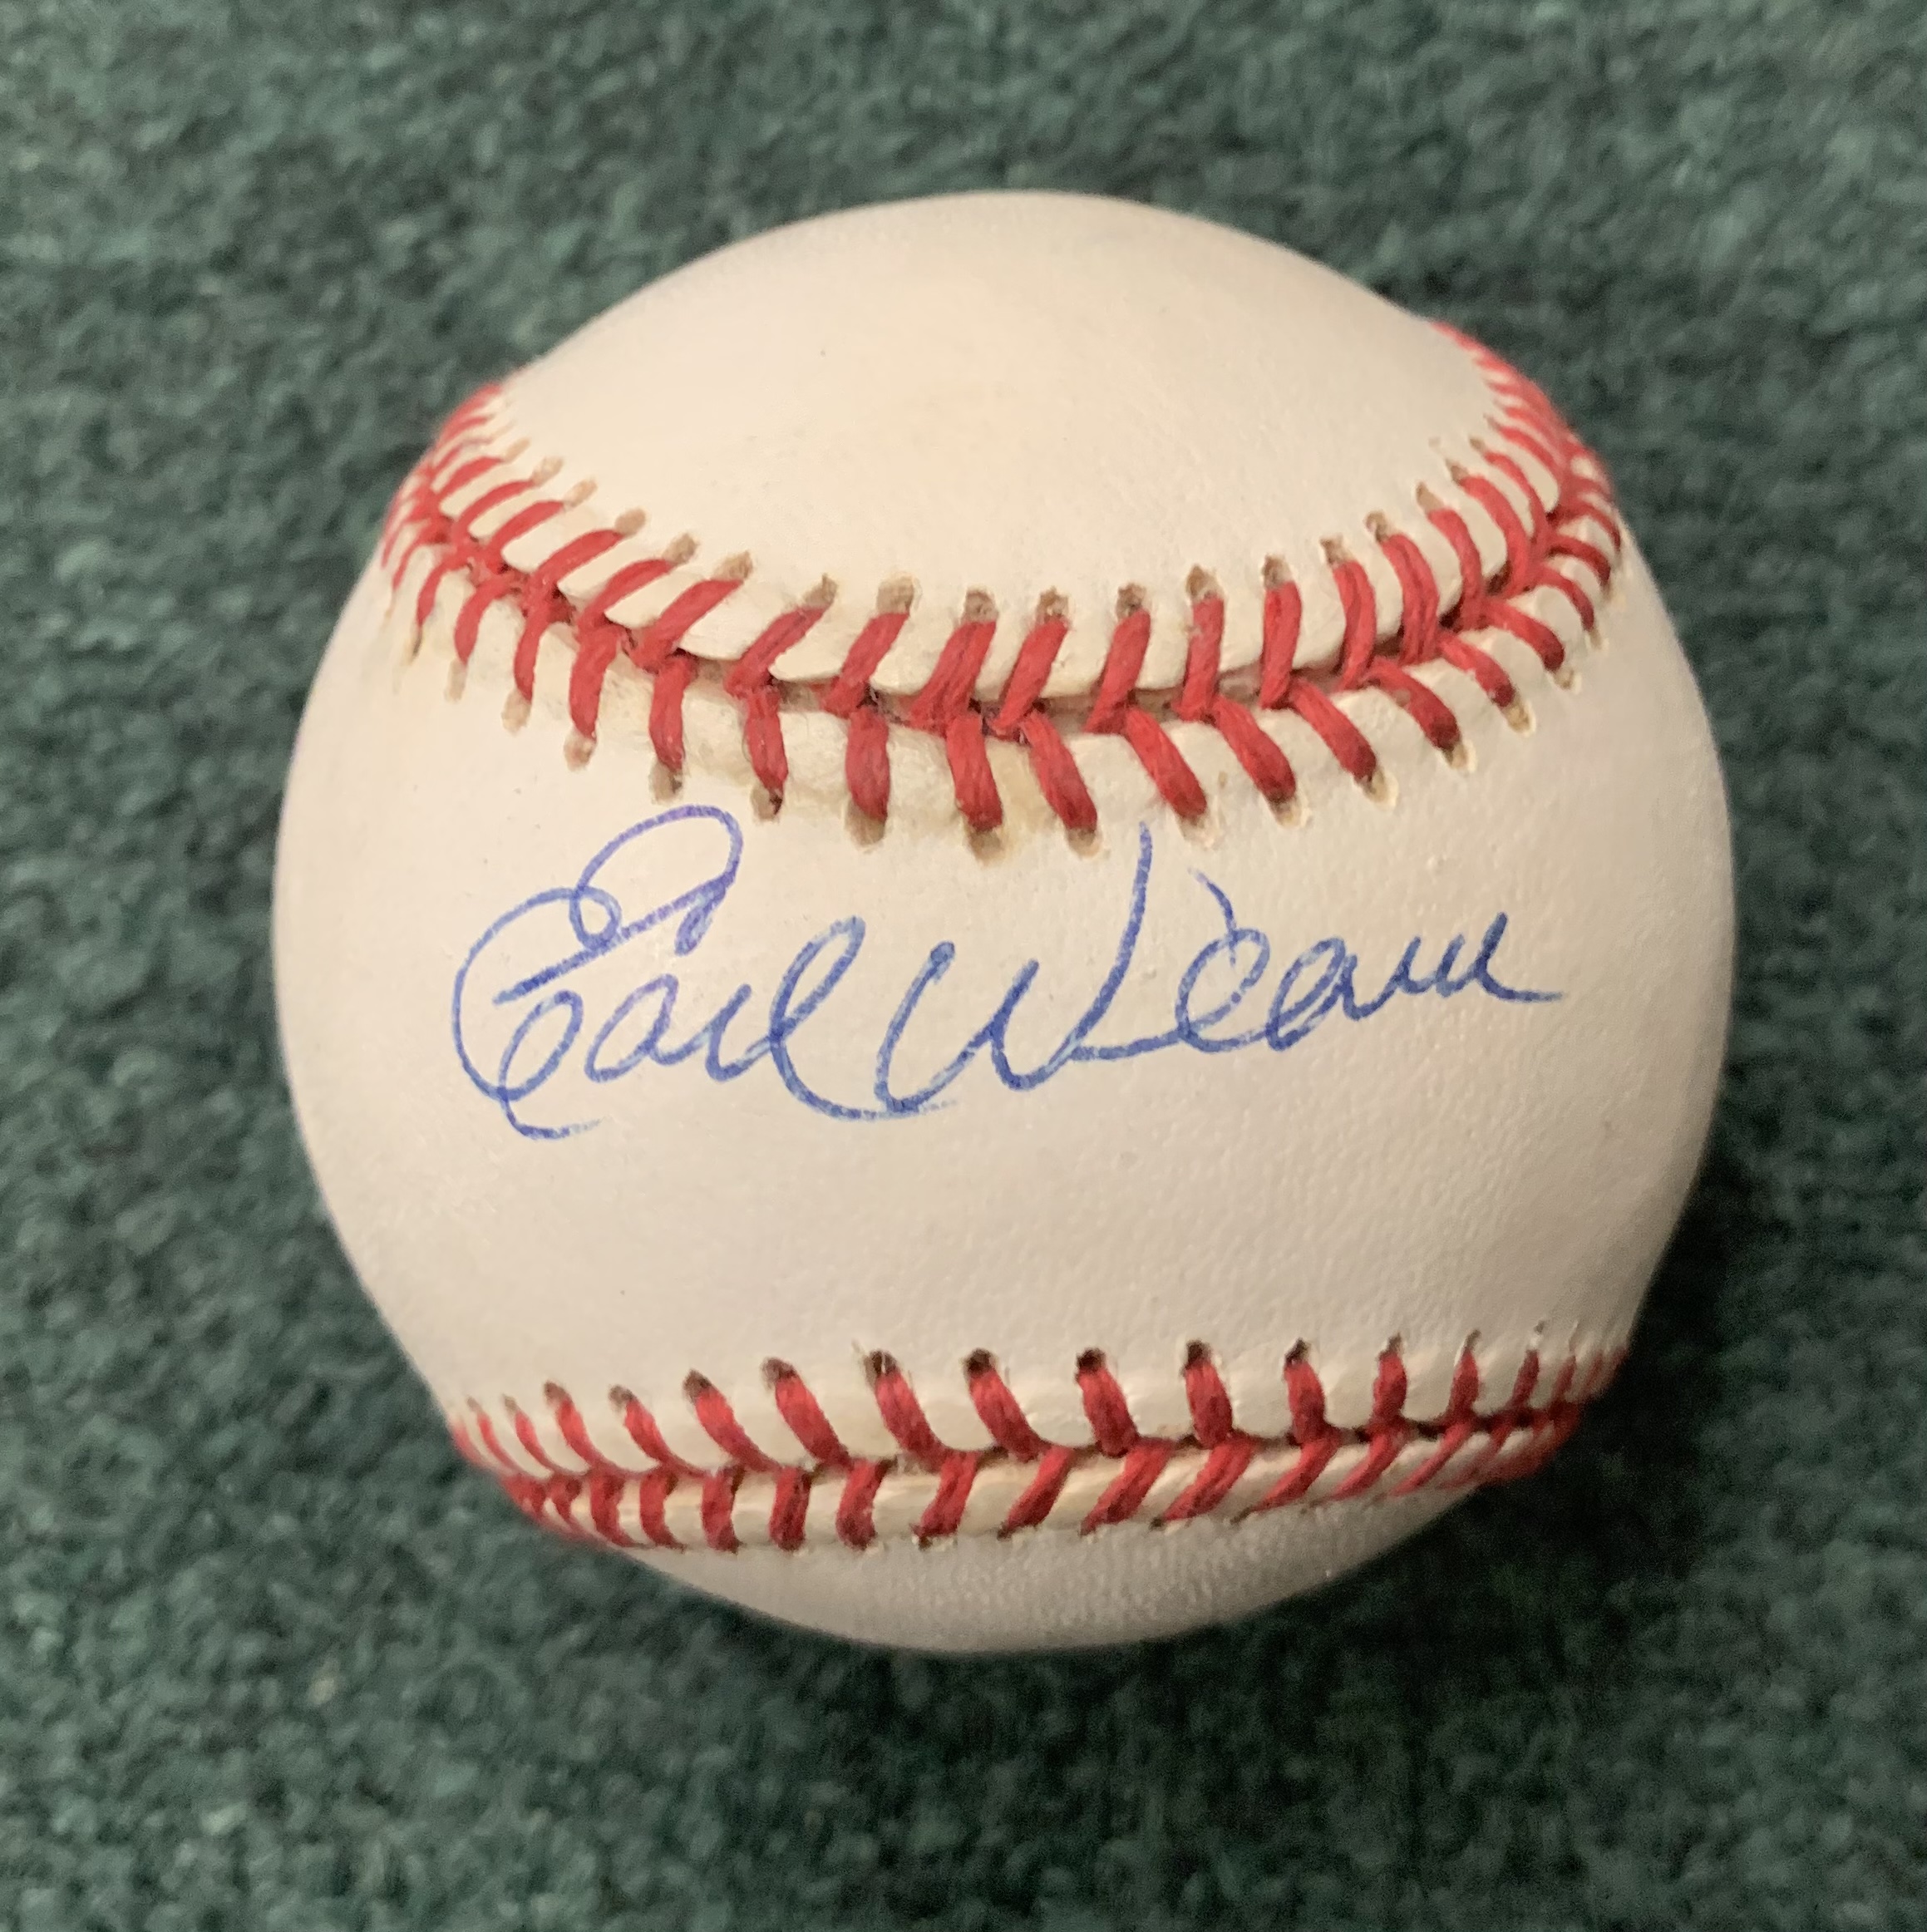  Earl Weaver signed American League Baseball